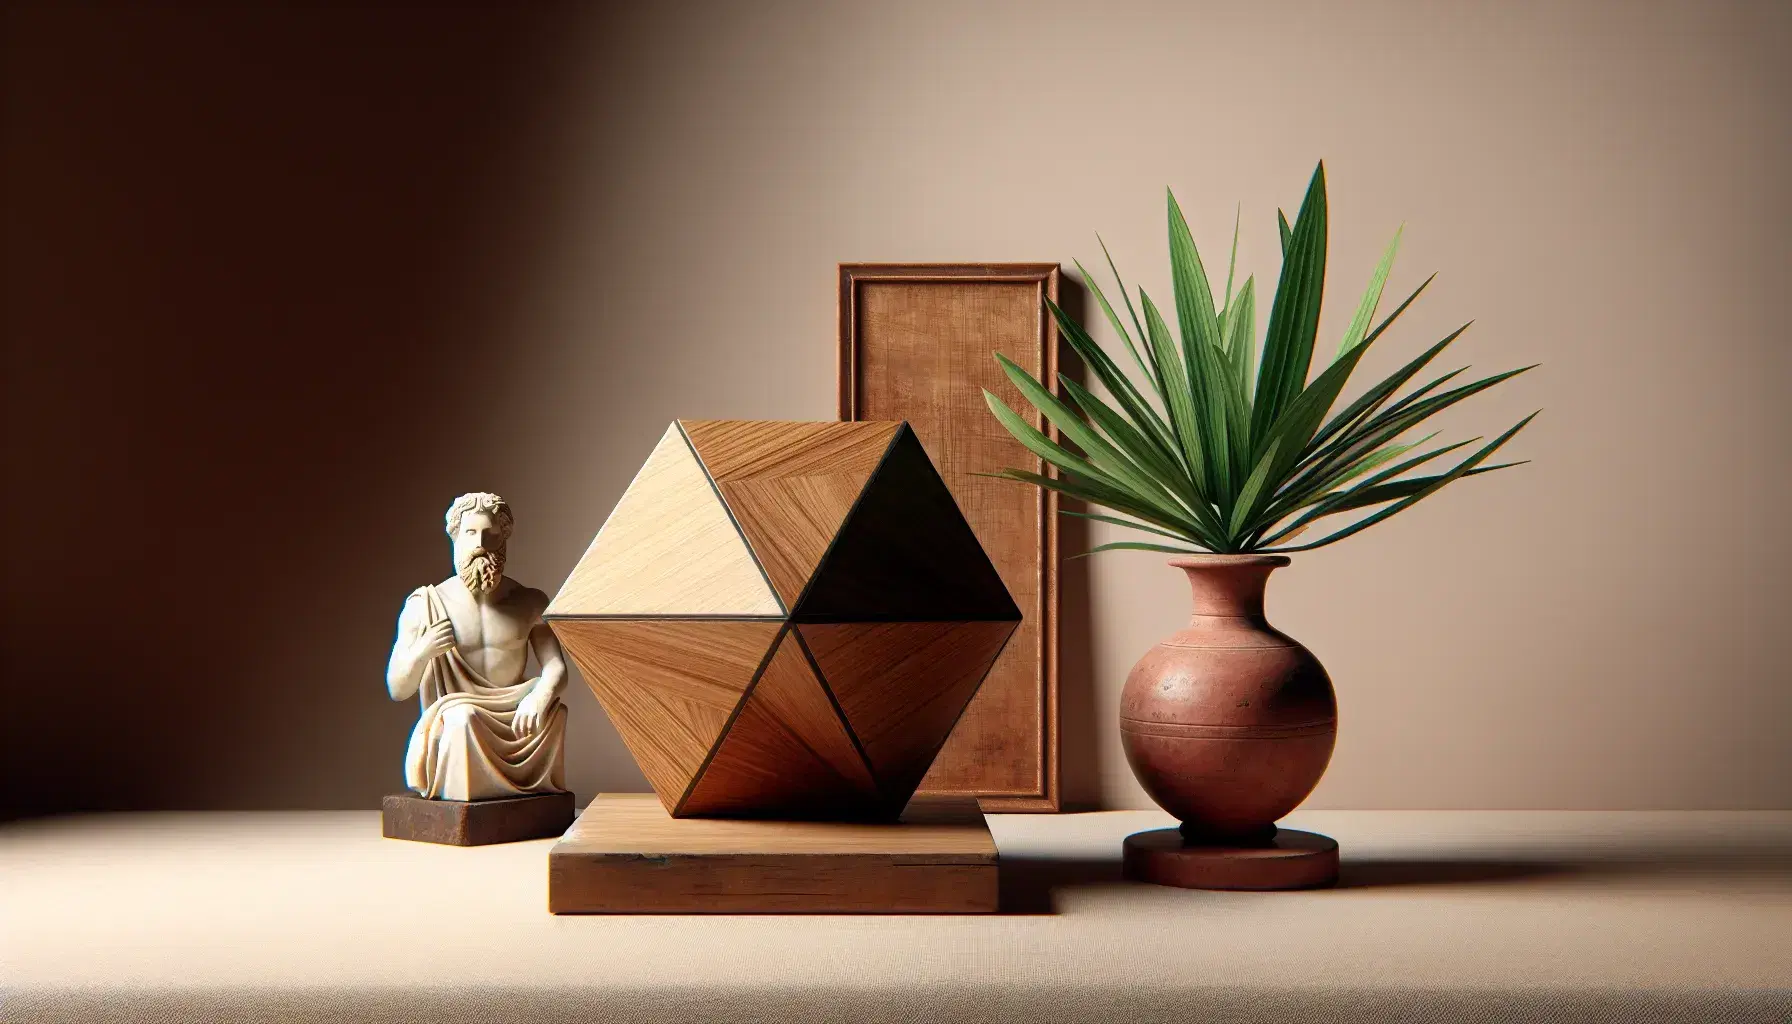 Composizione fotografica con tetraedro in legno, statuetta di marmo di Pitagora, pianta in vaso di terracotta e antico strumento a corde su sfondo beige.